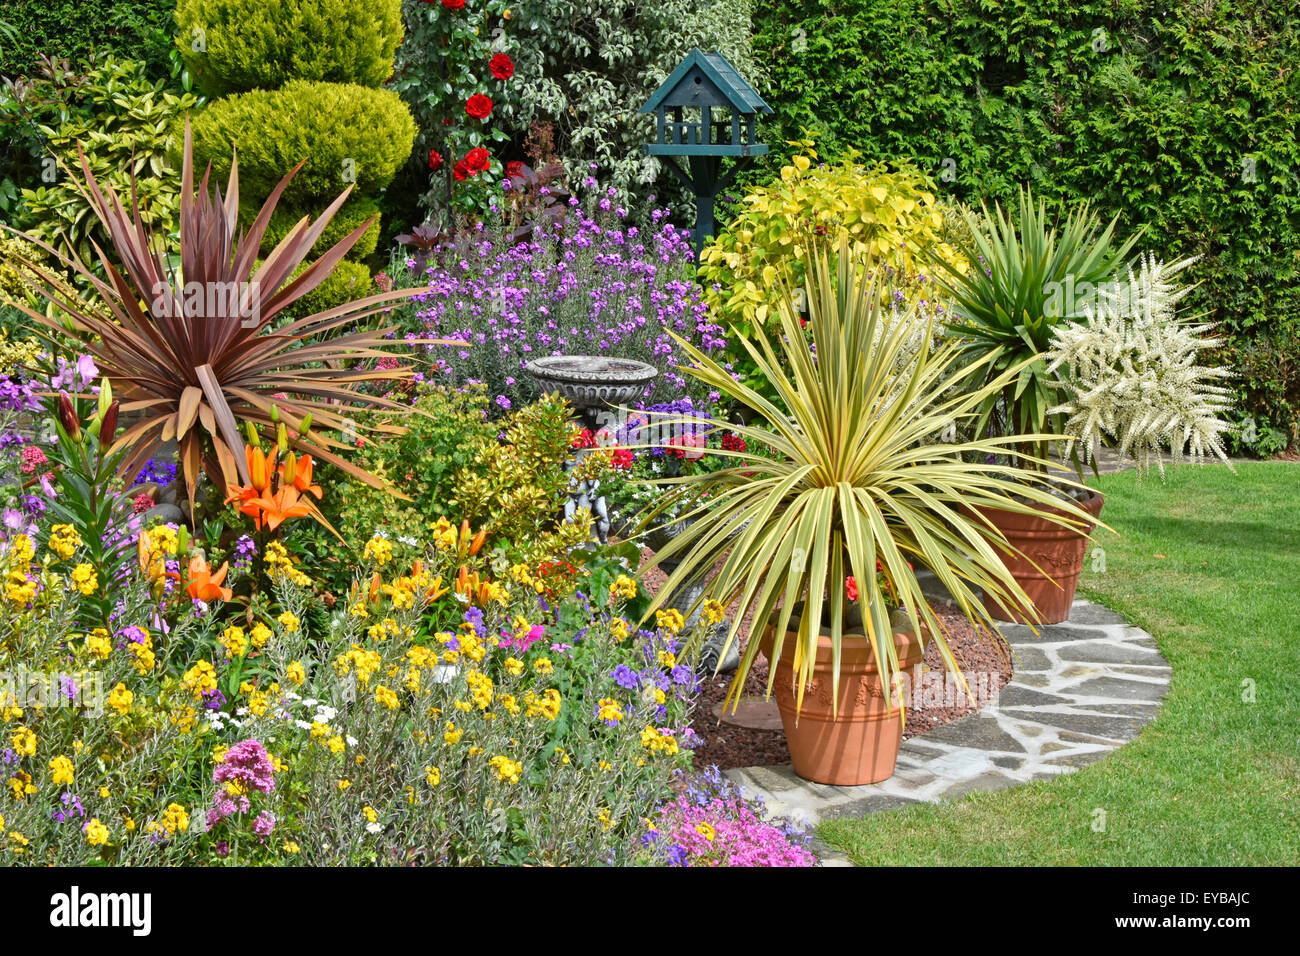 Zurück Garten Design gemischte Pflanzen für Farbeffekt & Topfe Pflanzen für flexible abwechslungsreiche Arrangements mit Nadelbaumhecke Hintergrund Sommer Essex England Großbritannien Stockfoto